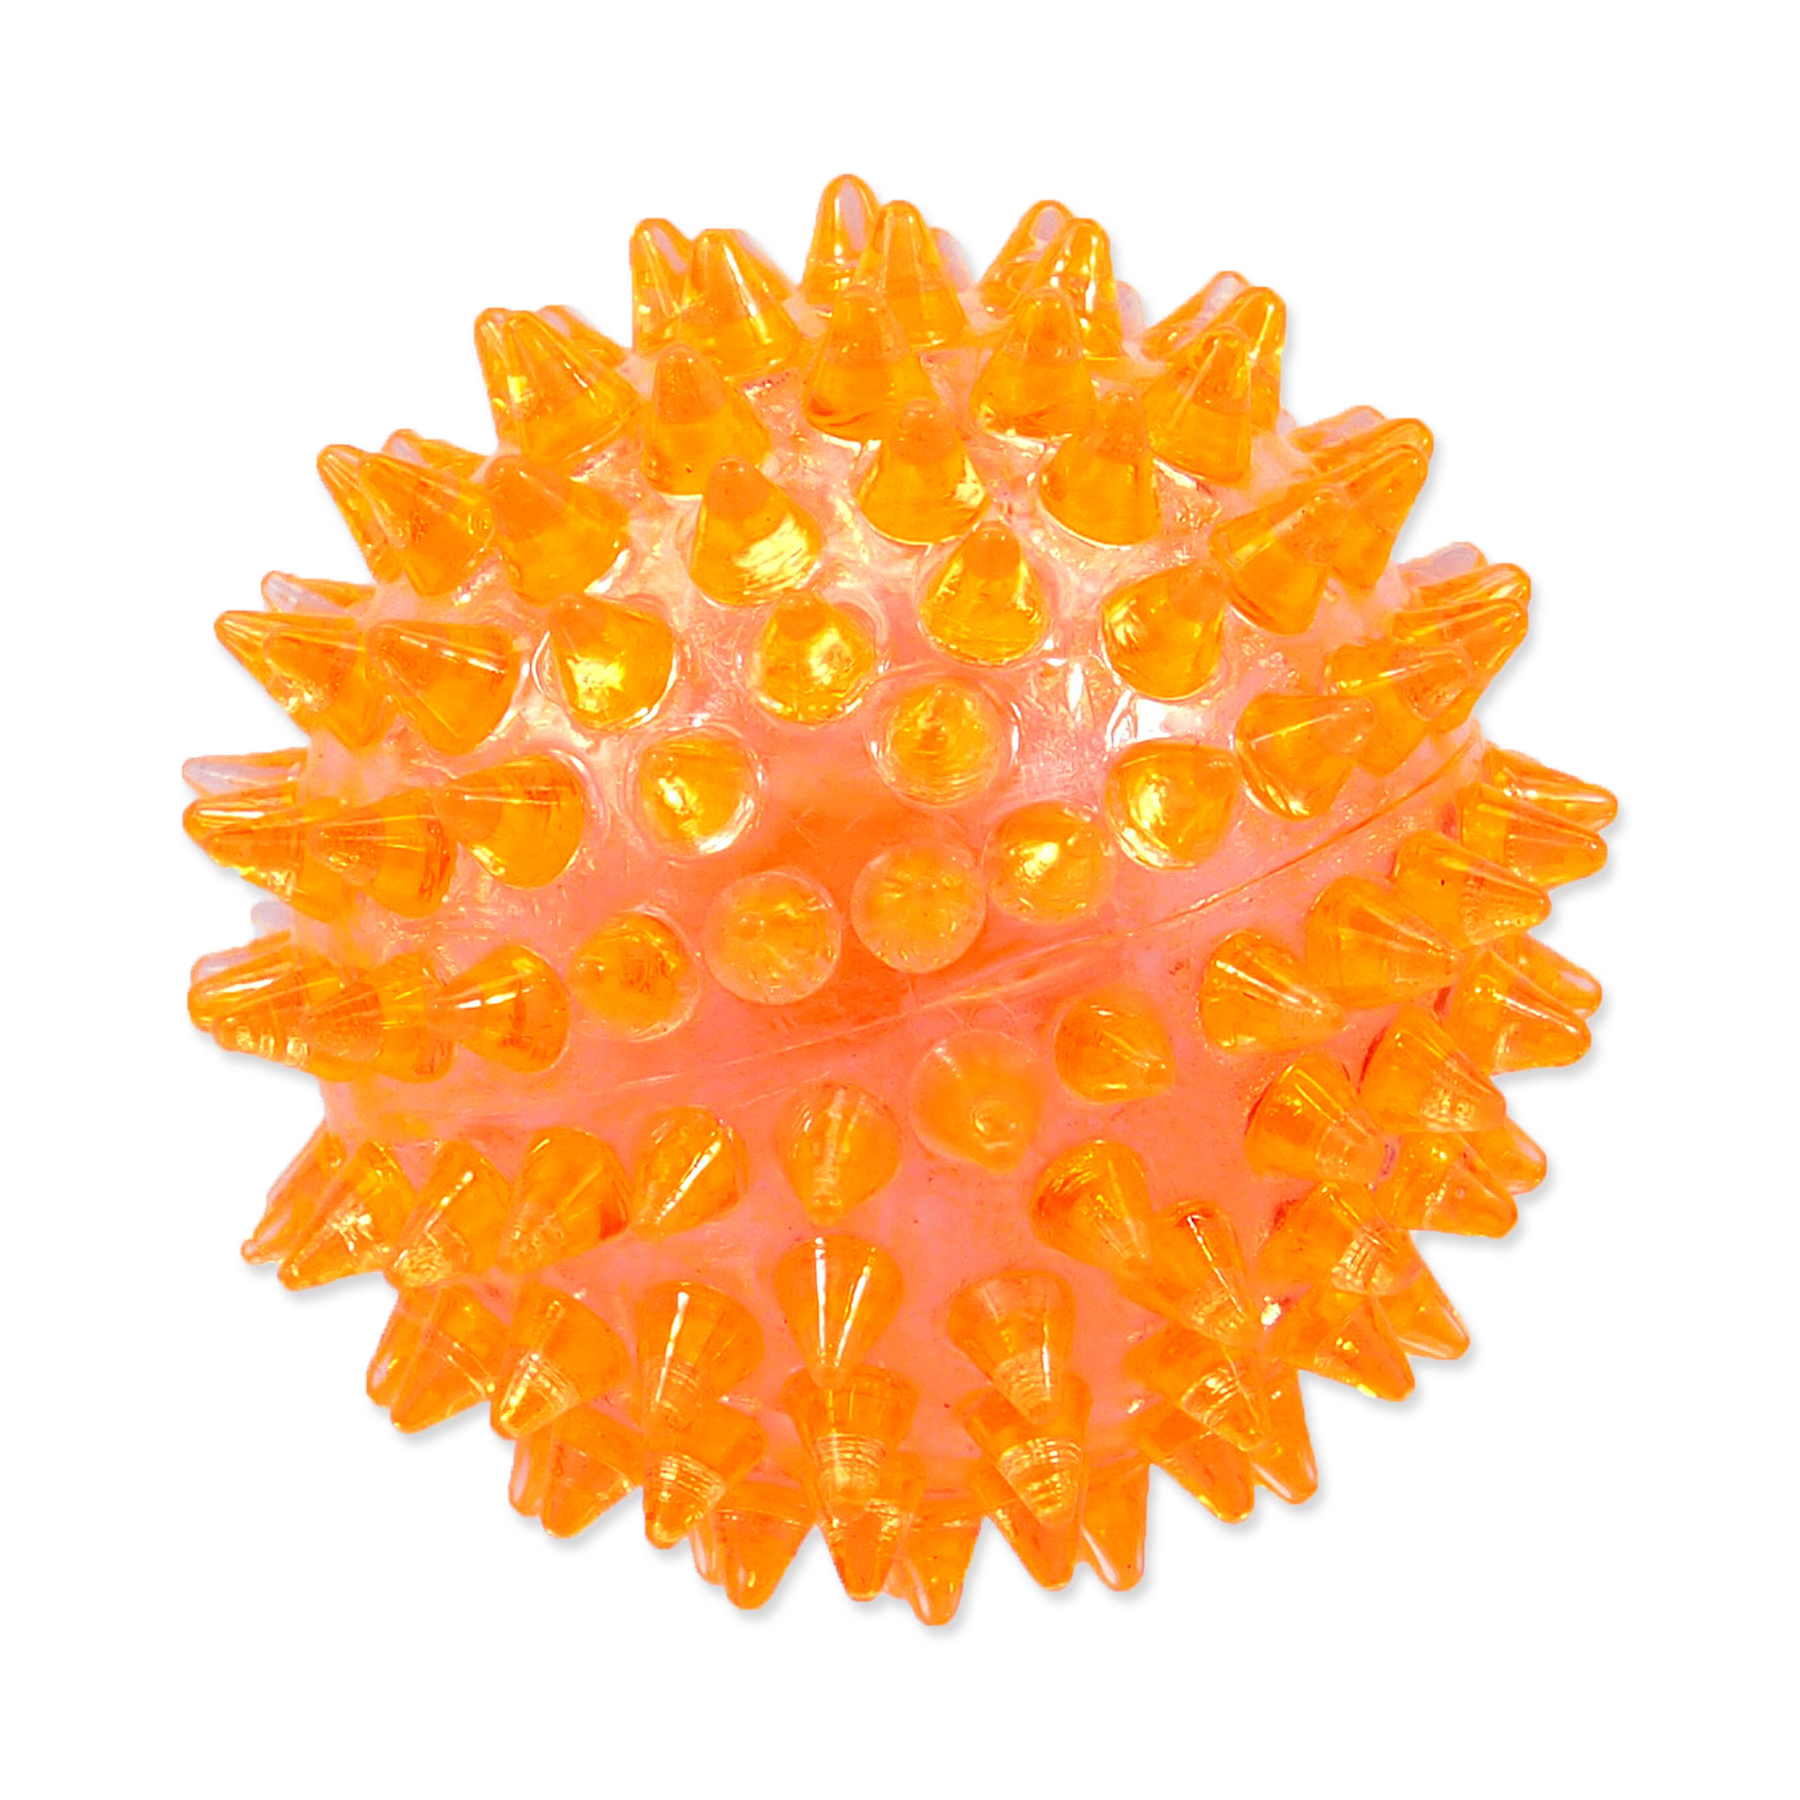 Dog Fantasy Hračka míček pískací oranžový 6 cm Dog Fantasy